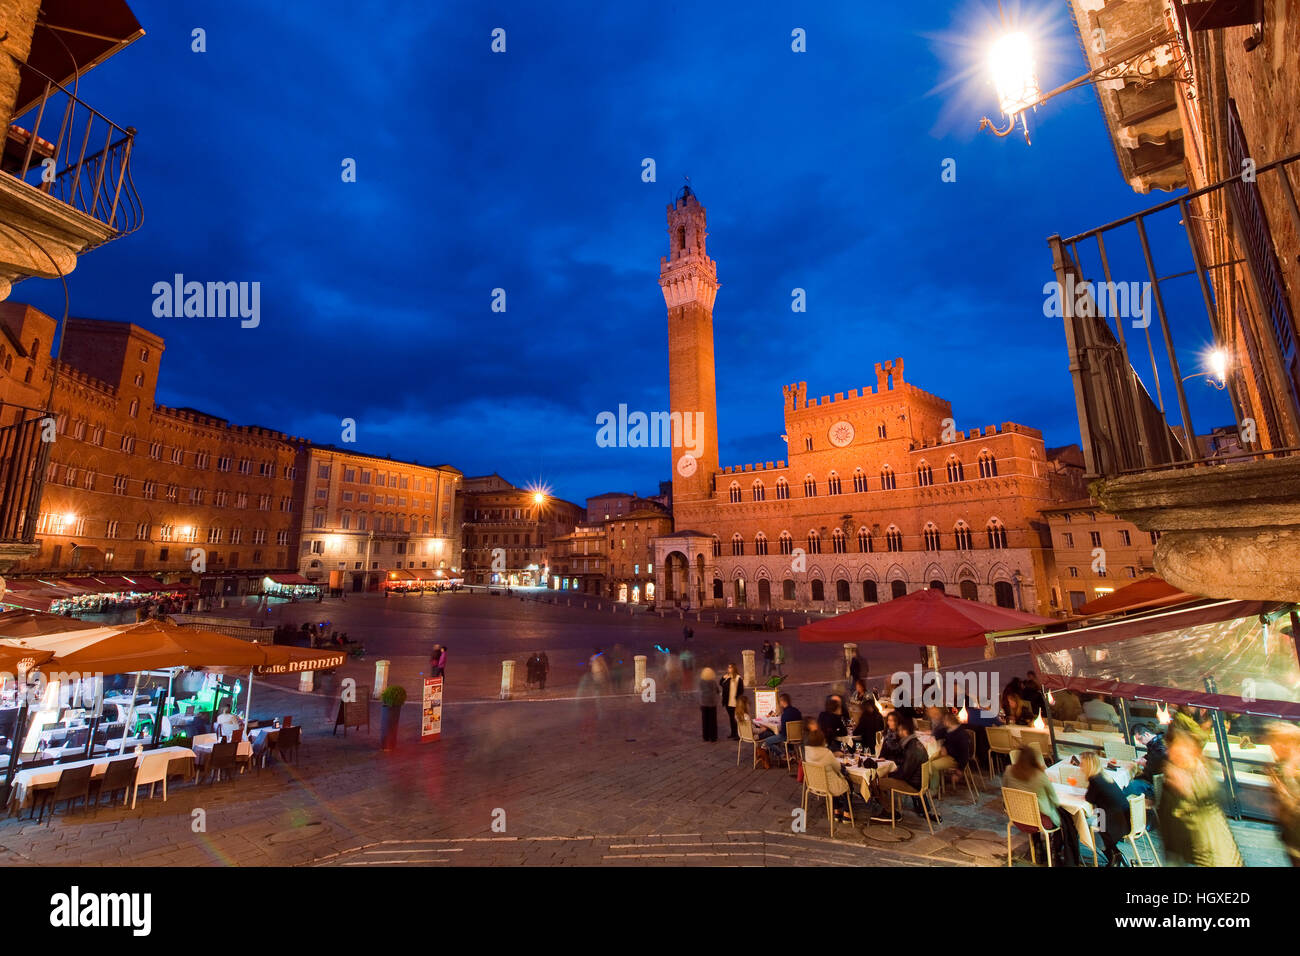 A Piazza del Campo, sito histroric, cavallo di razza arena, città storica, Siena, Toscana, Italia, Europa Foto Stock